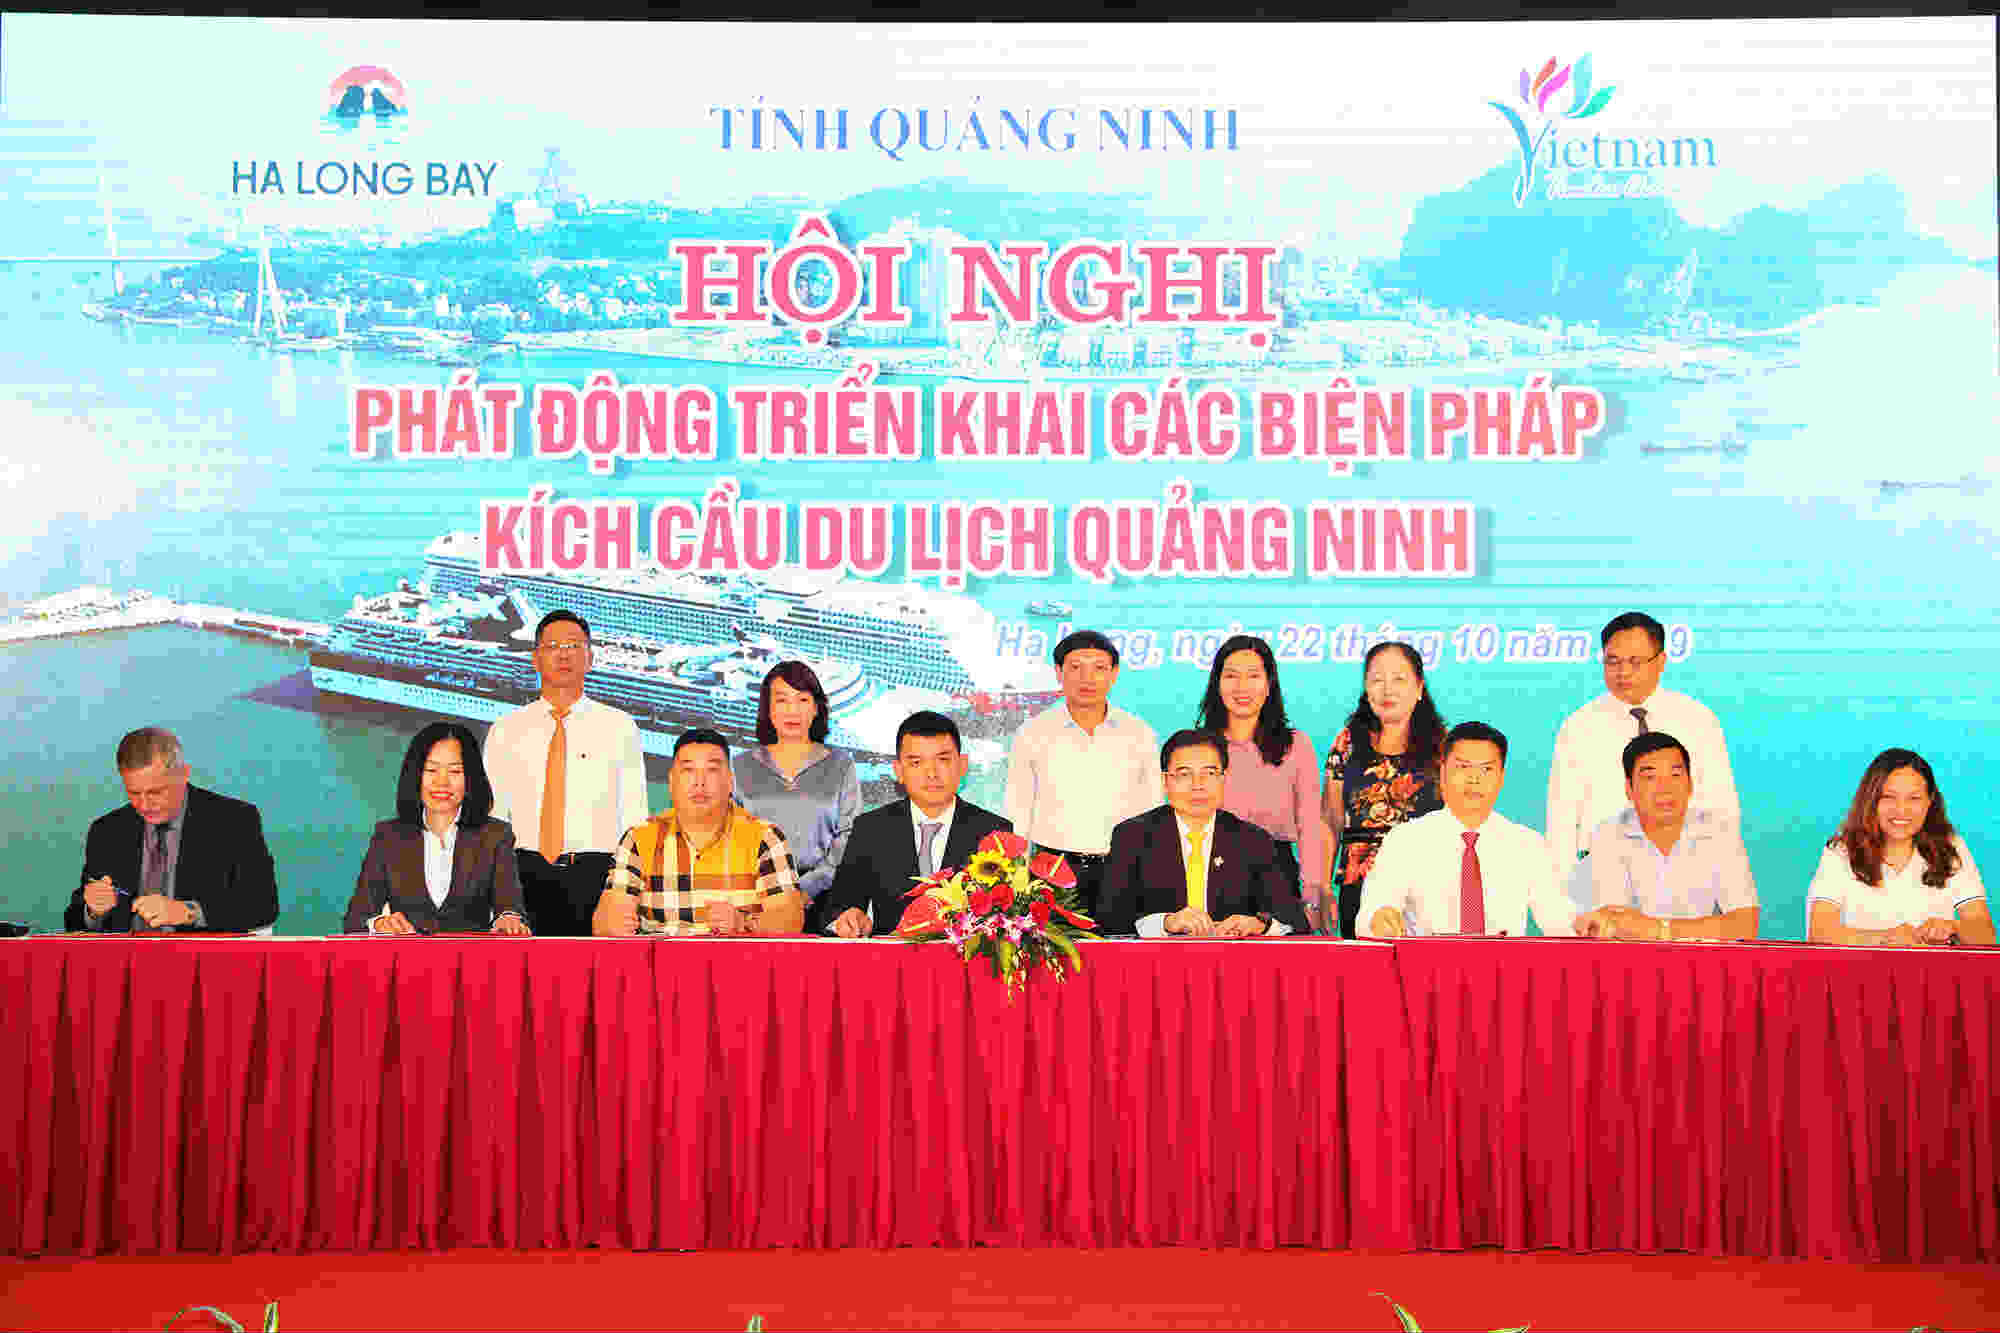 ác nhà đầu tư, các đơn vị cung cấp dịch vụ ký kết biên bản ghi nhớ, thỏa thuận hợp tác phát triển dịch vụ, du lịch trên địa bàn tỉnh Quảng Ninh